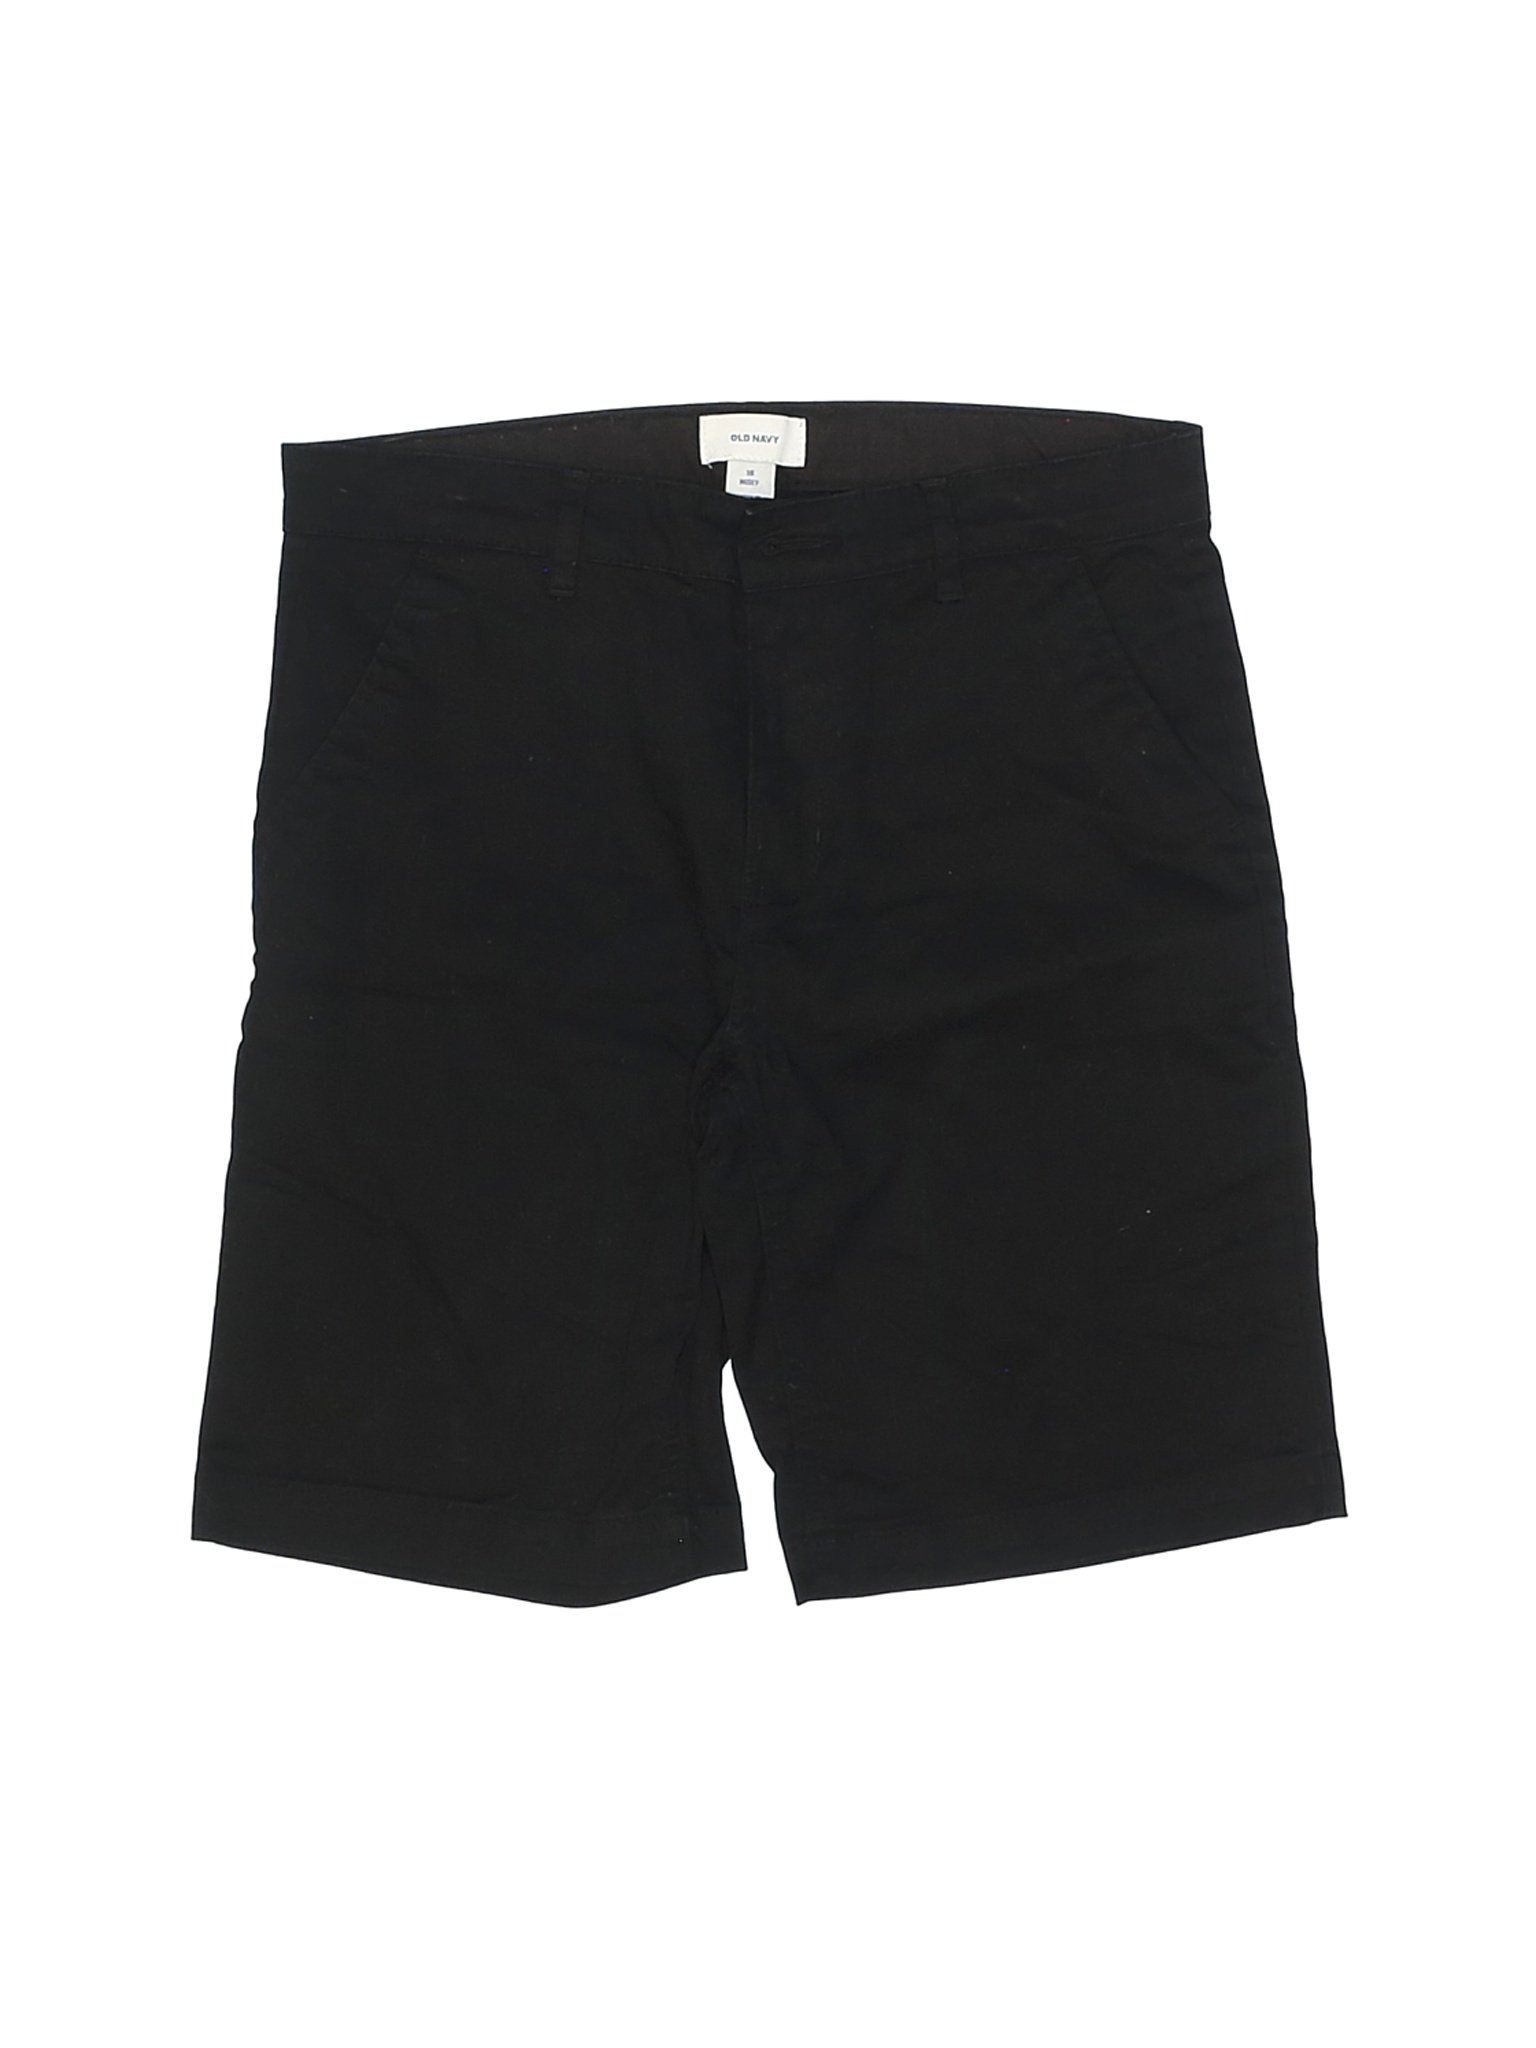 Old Navy Boys Black Shorts 10 | eBay